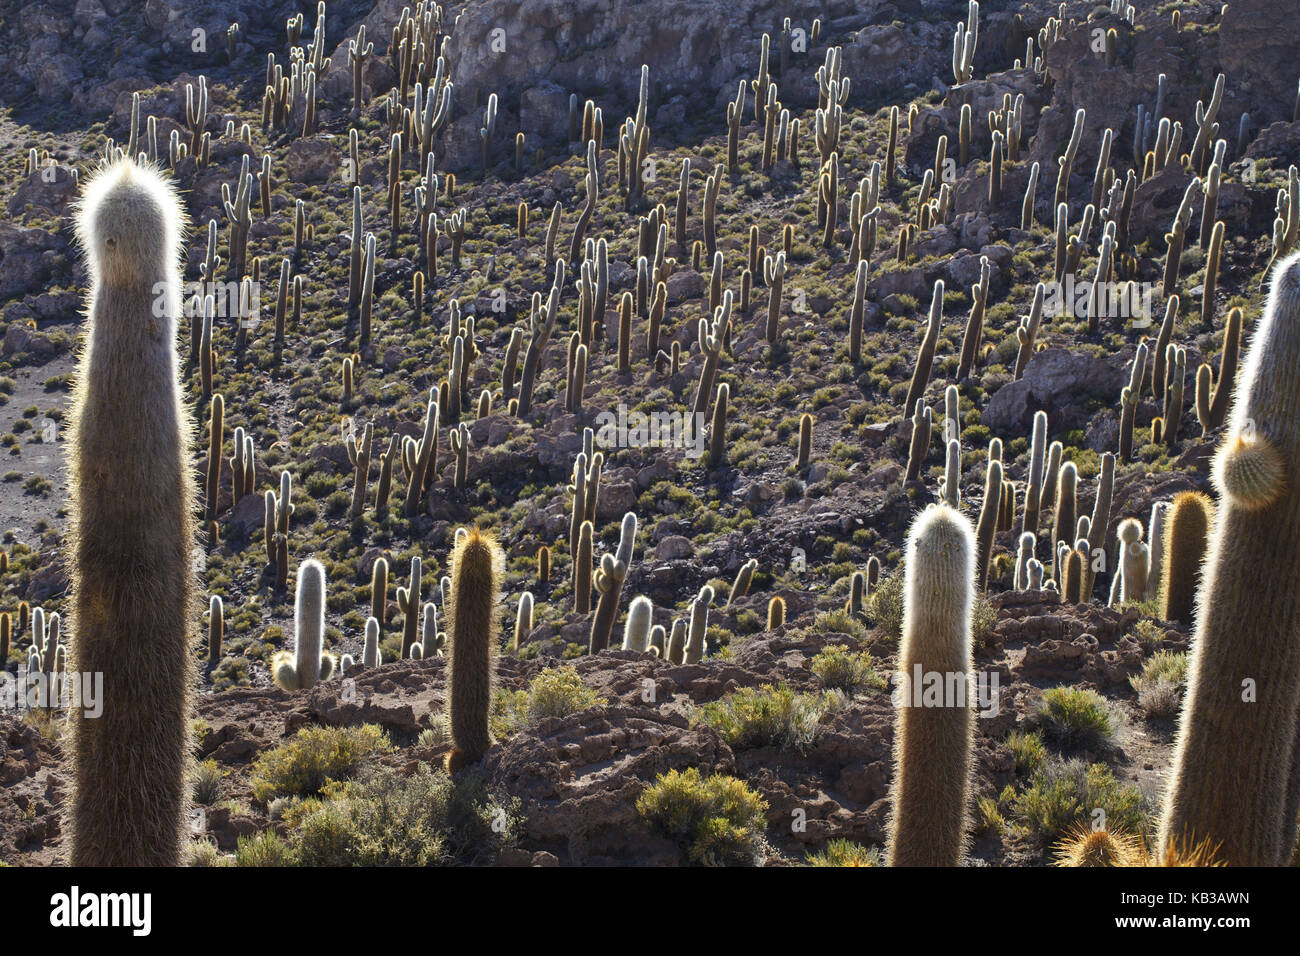 Bolivia, Salar de Uyuni, Isla Inca Huasi, cacti, Stock Photo